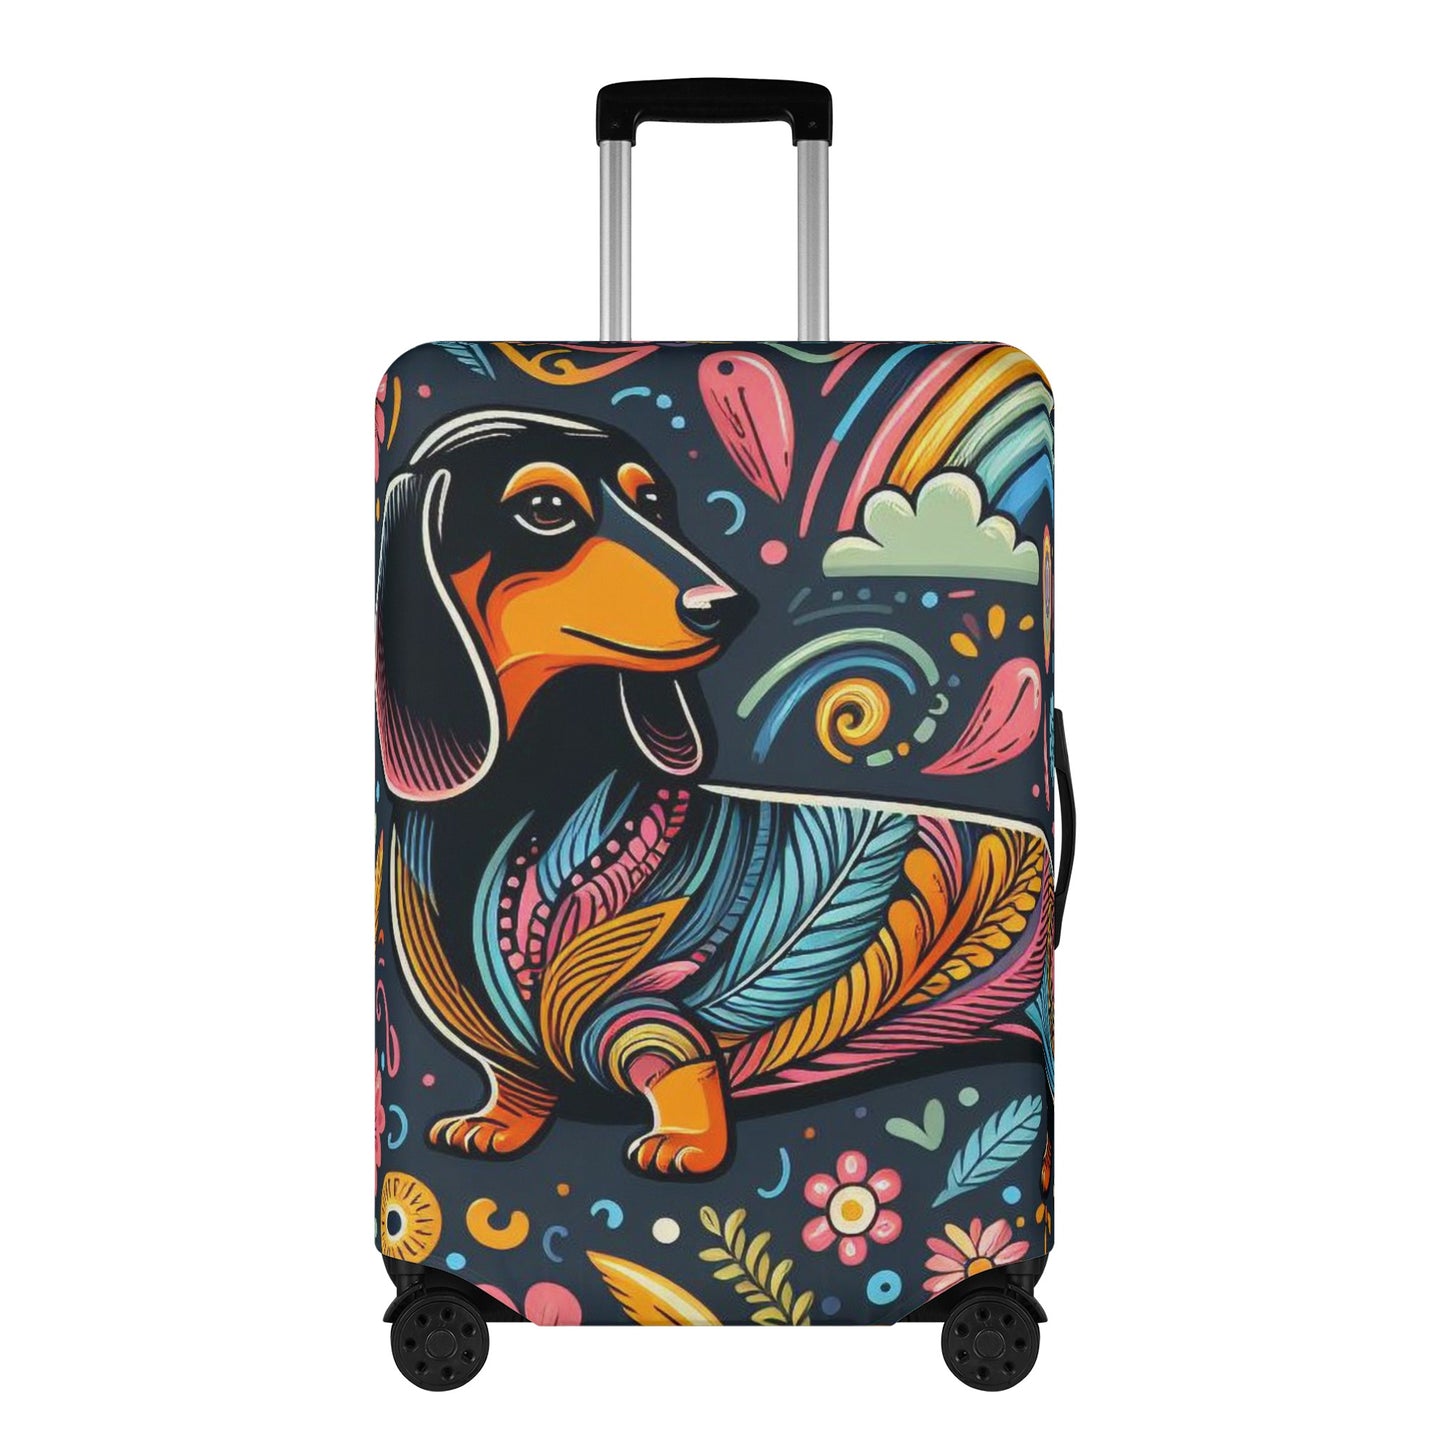 Tito - Luggage Cover